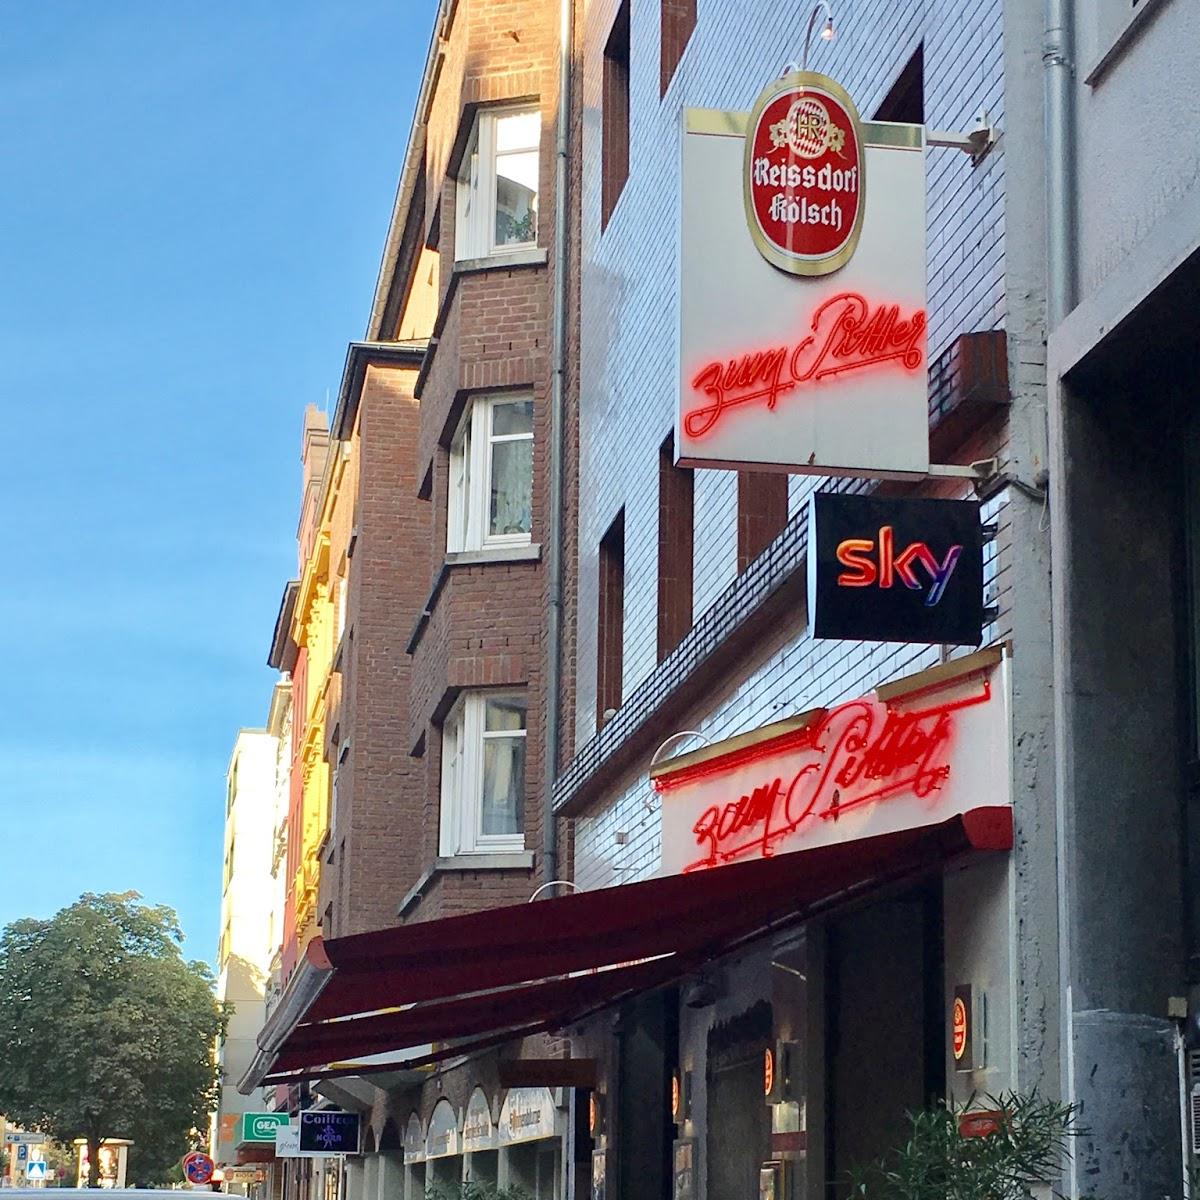 Restaurant " Pitter em 1-4" in Köln